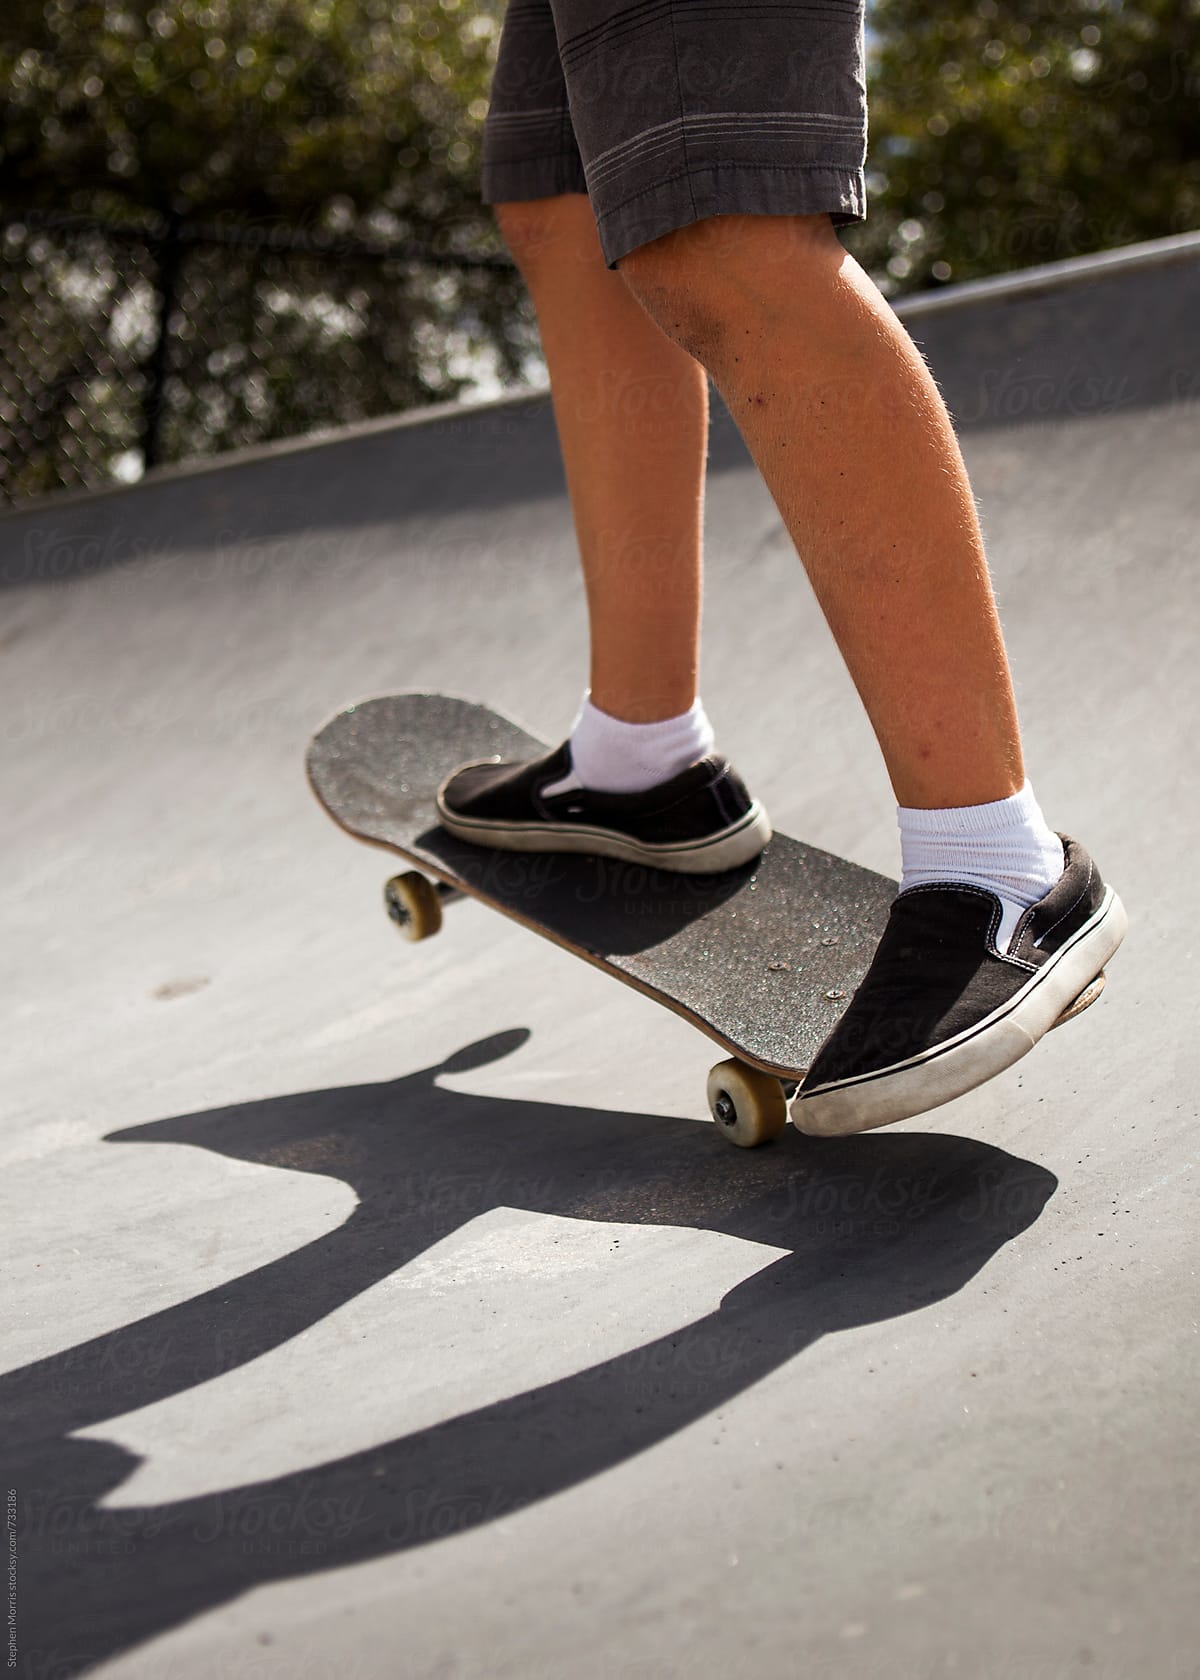 Feet of Skateboarder on Ramp